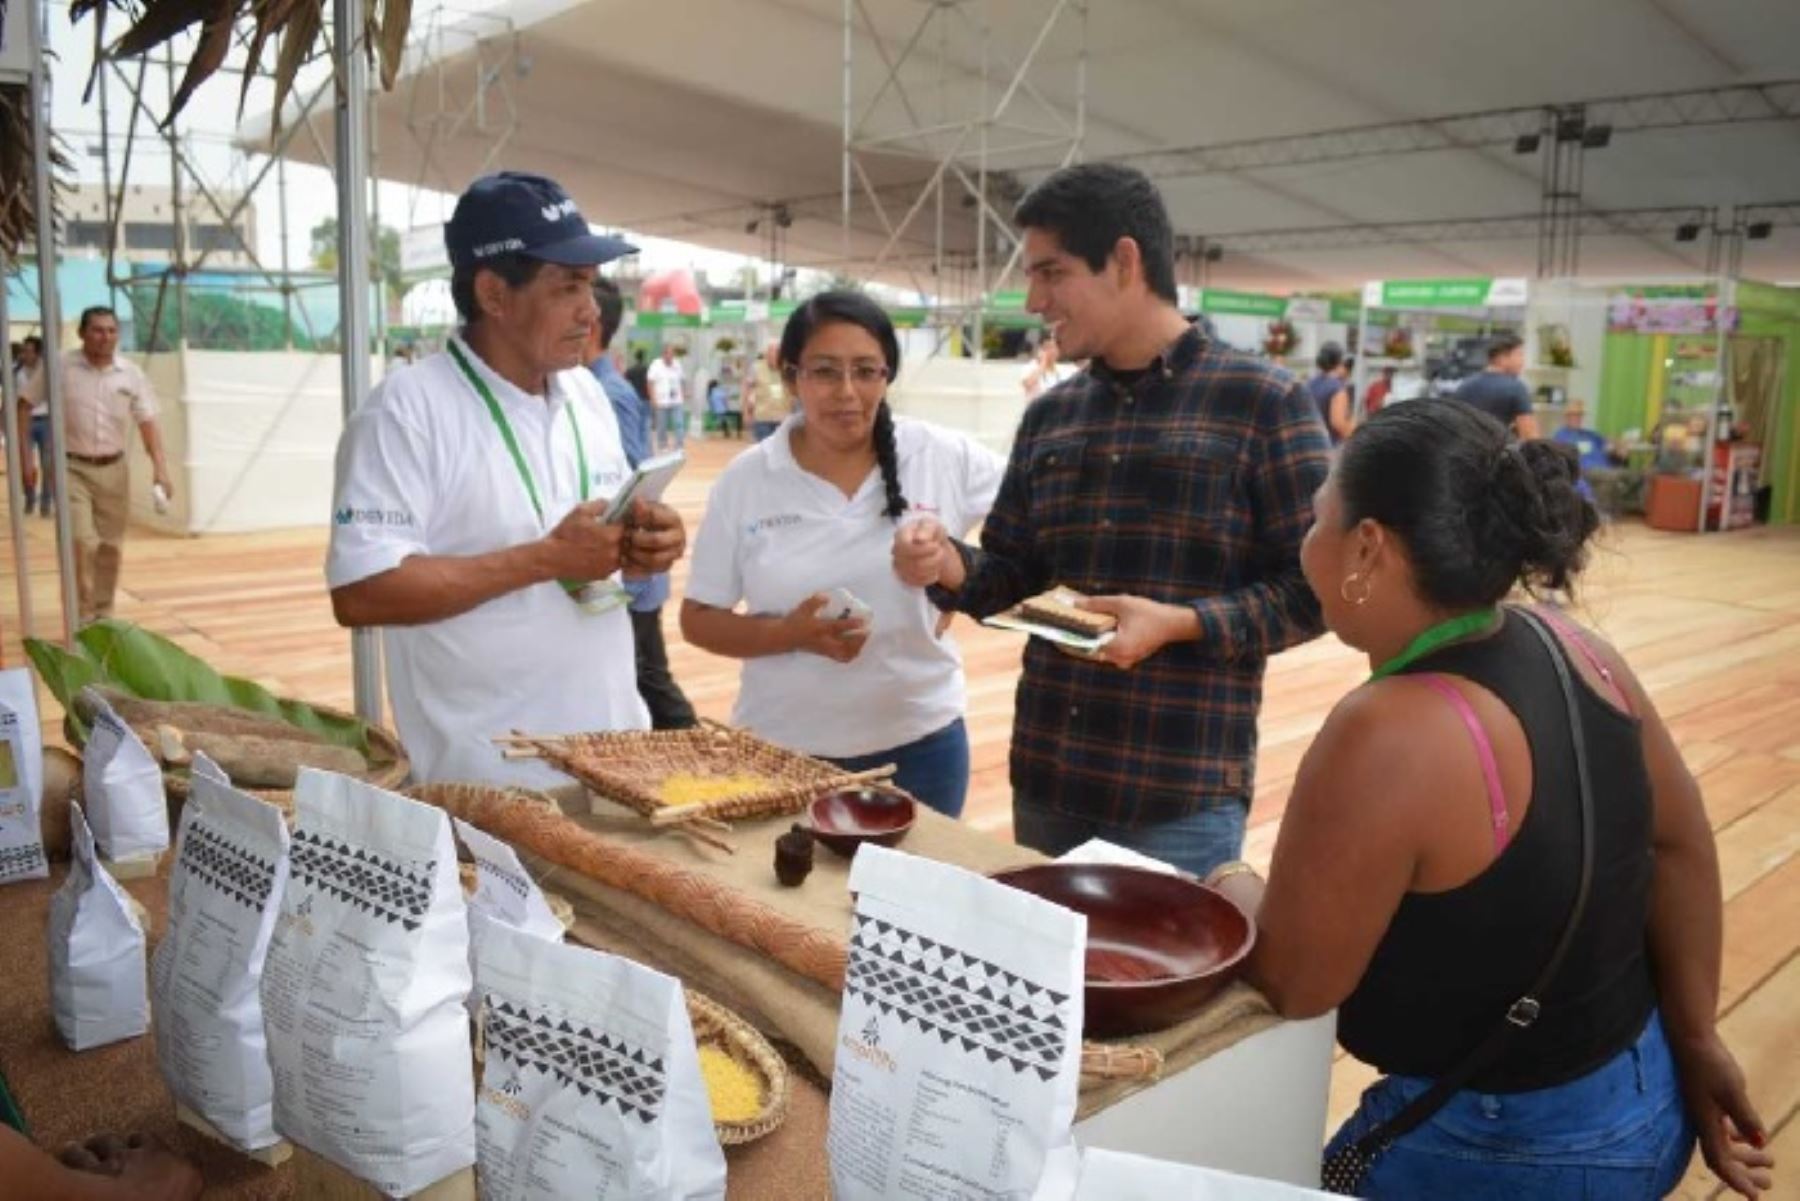 Durante la novena edición de la Expoamazónica 2019, los productores de la comunidad indígena Ticuna, en la región Loreto, vendieron más de 700 kilos de fariña (cereal derivado de la yuca) y sostuvieron reuniones con ocho representantes de empresas nacionales interesadas en el producto.